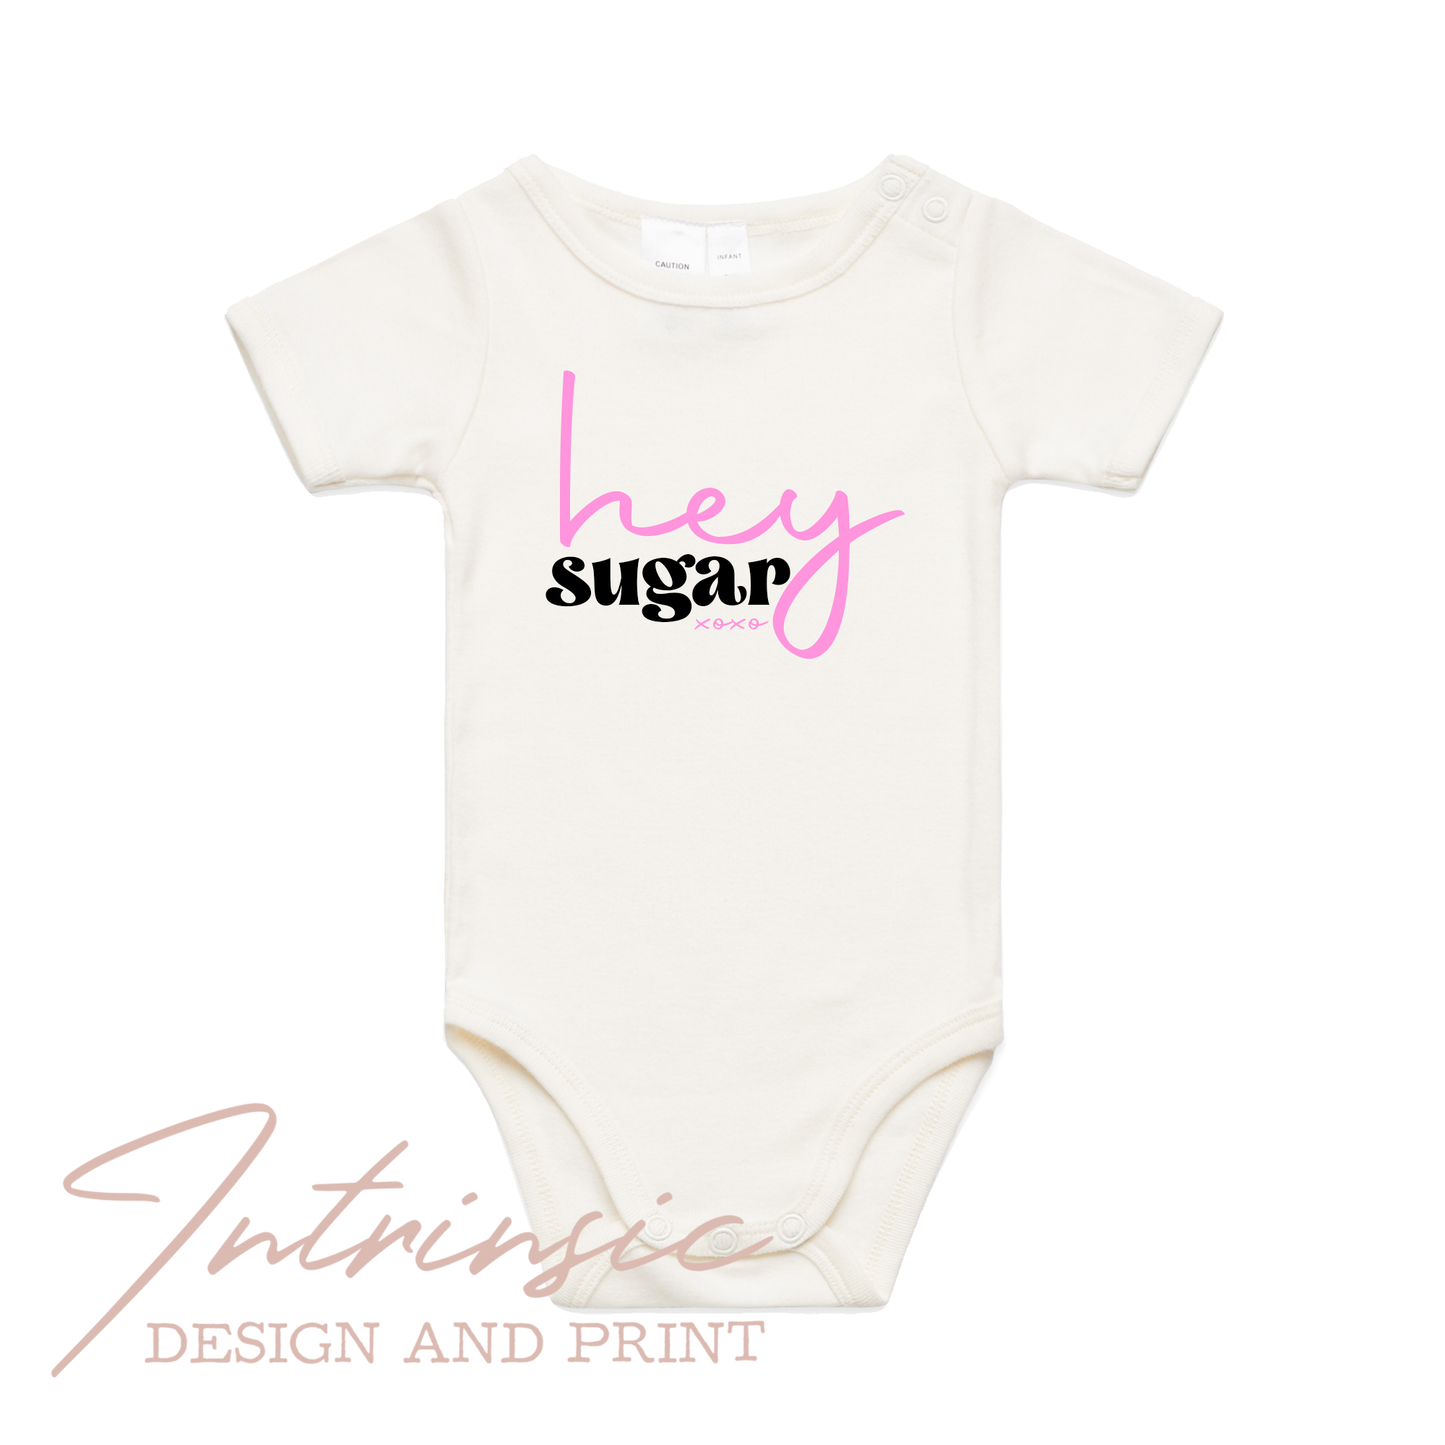 Hey sugar - Infant